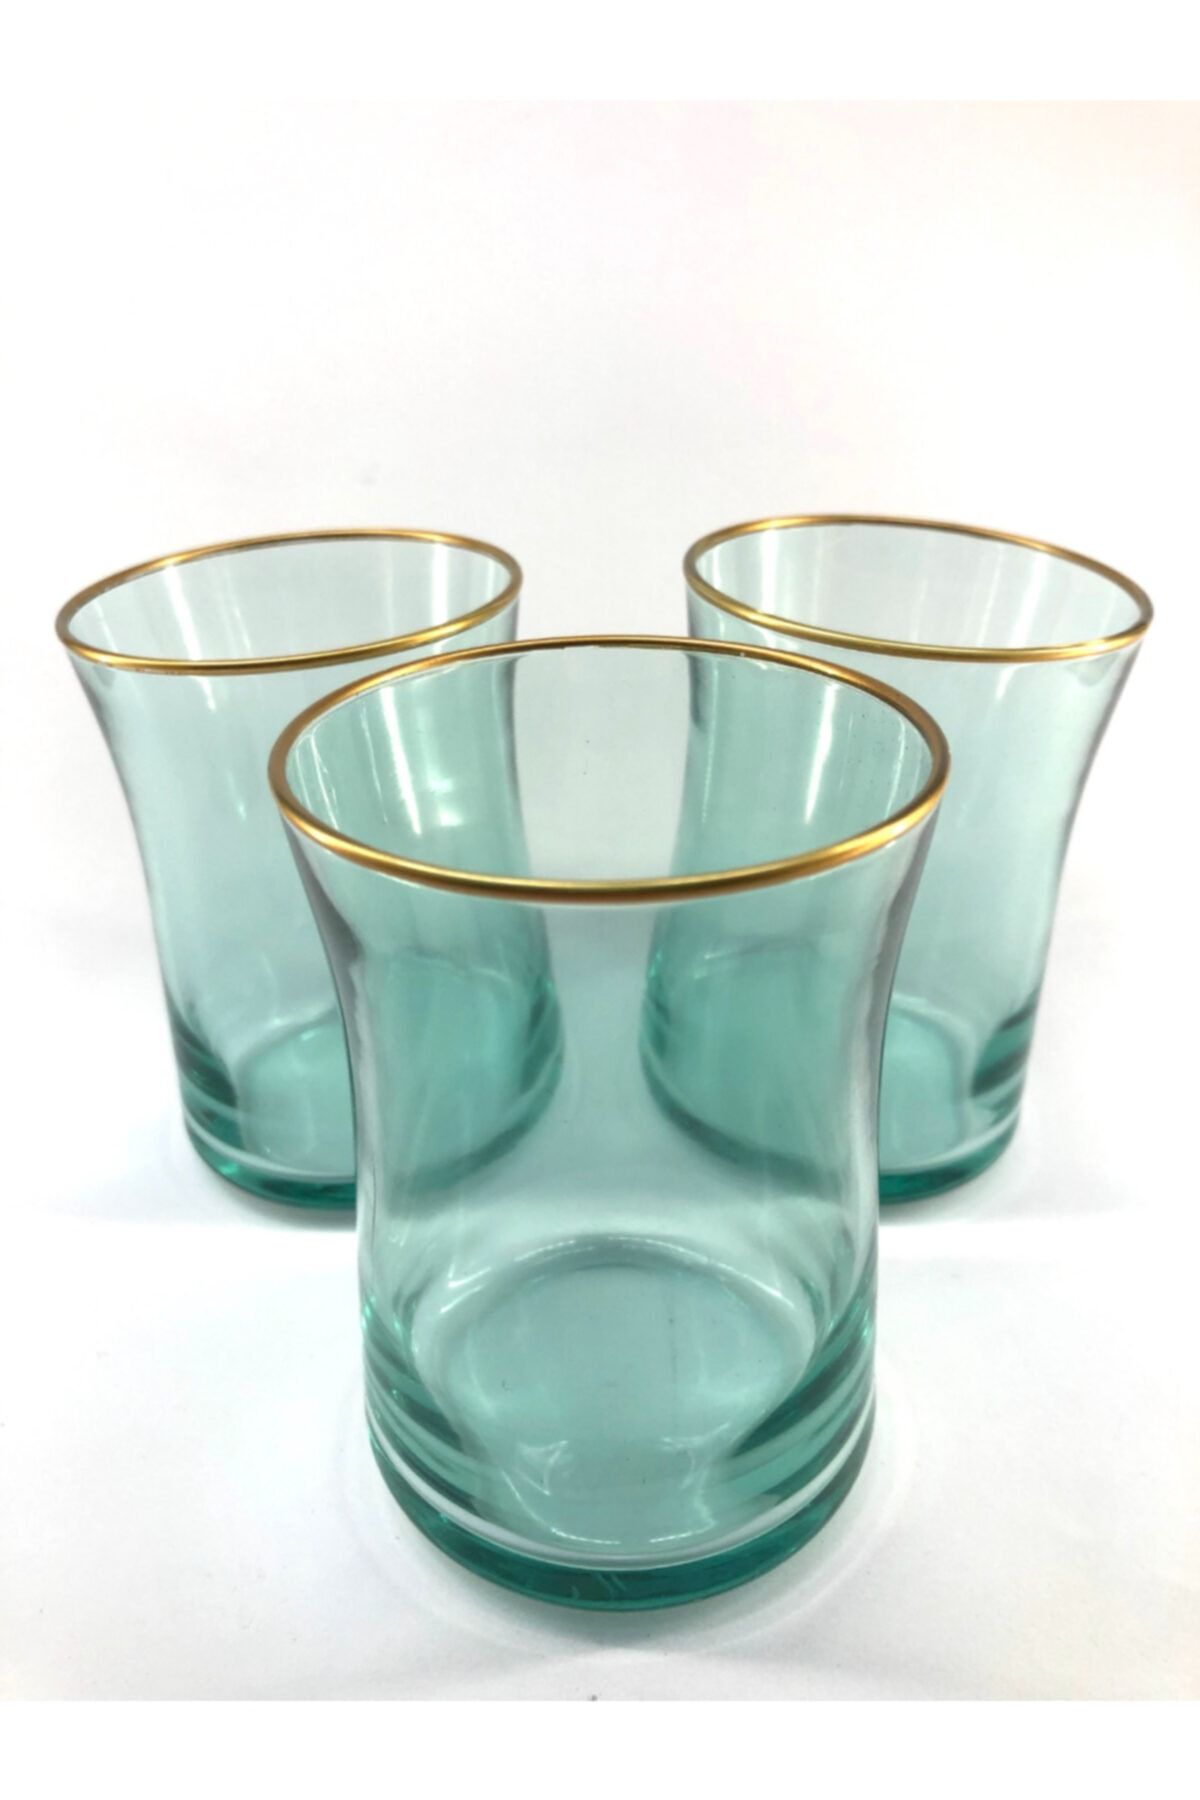 Rakle Neo Yeşil Renkli Kısa Meşrubat Bardağı 3'lü